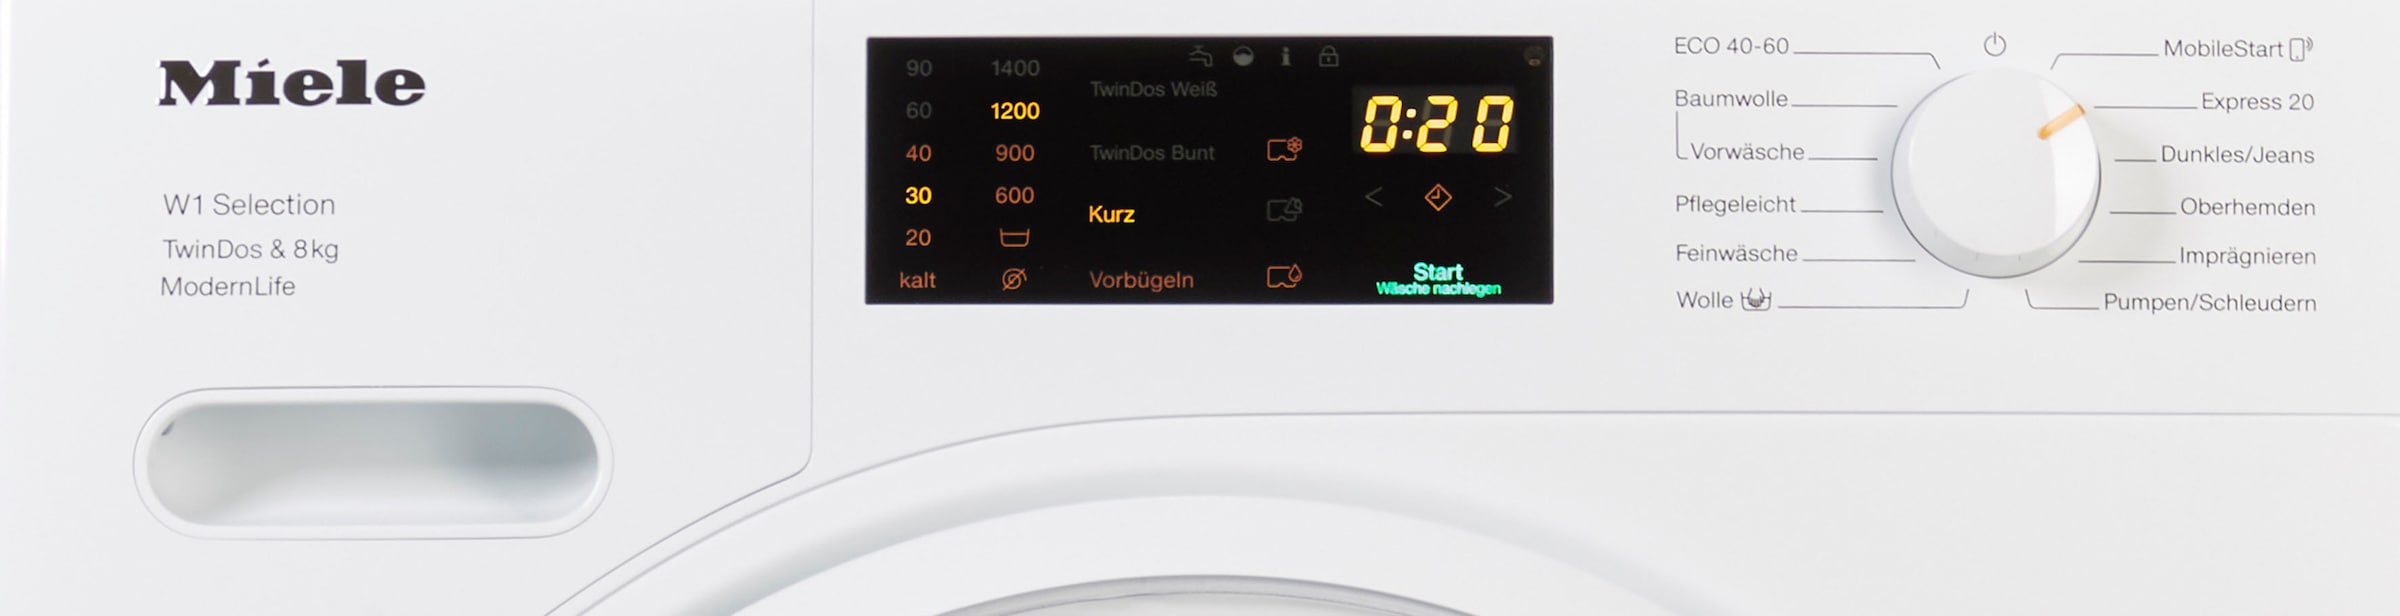 Miele Waschmaschine »WSD663 WCS TDos WCS zur 8kg«, WSD663 8 automatischen U/min, | & BAUR ModernLife, 1400 kg, Waschmitteldosierung TDos&8kg, TwinDos